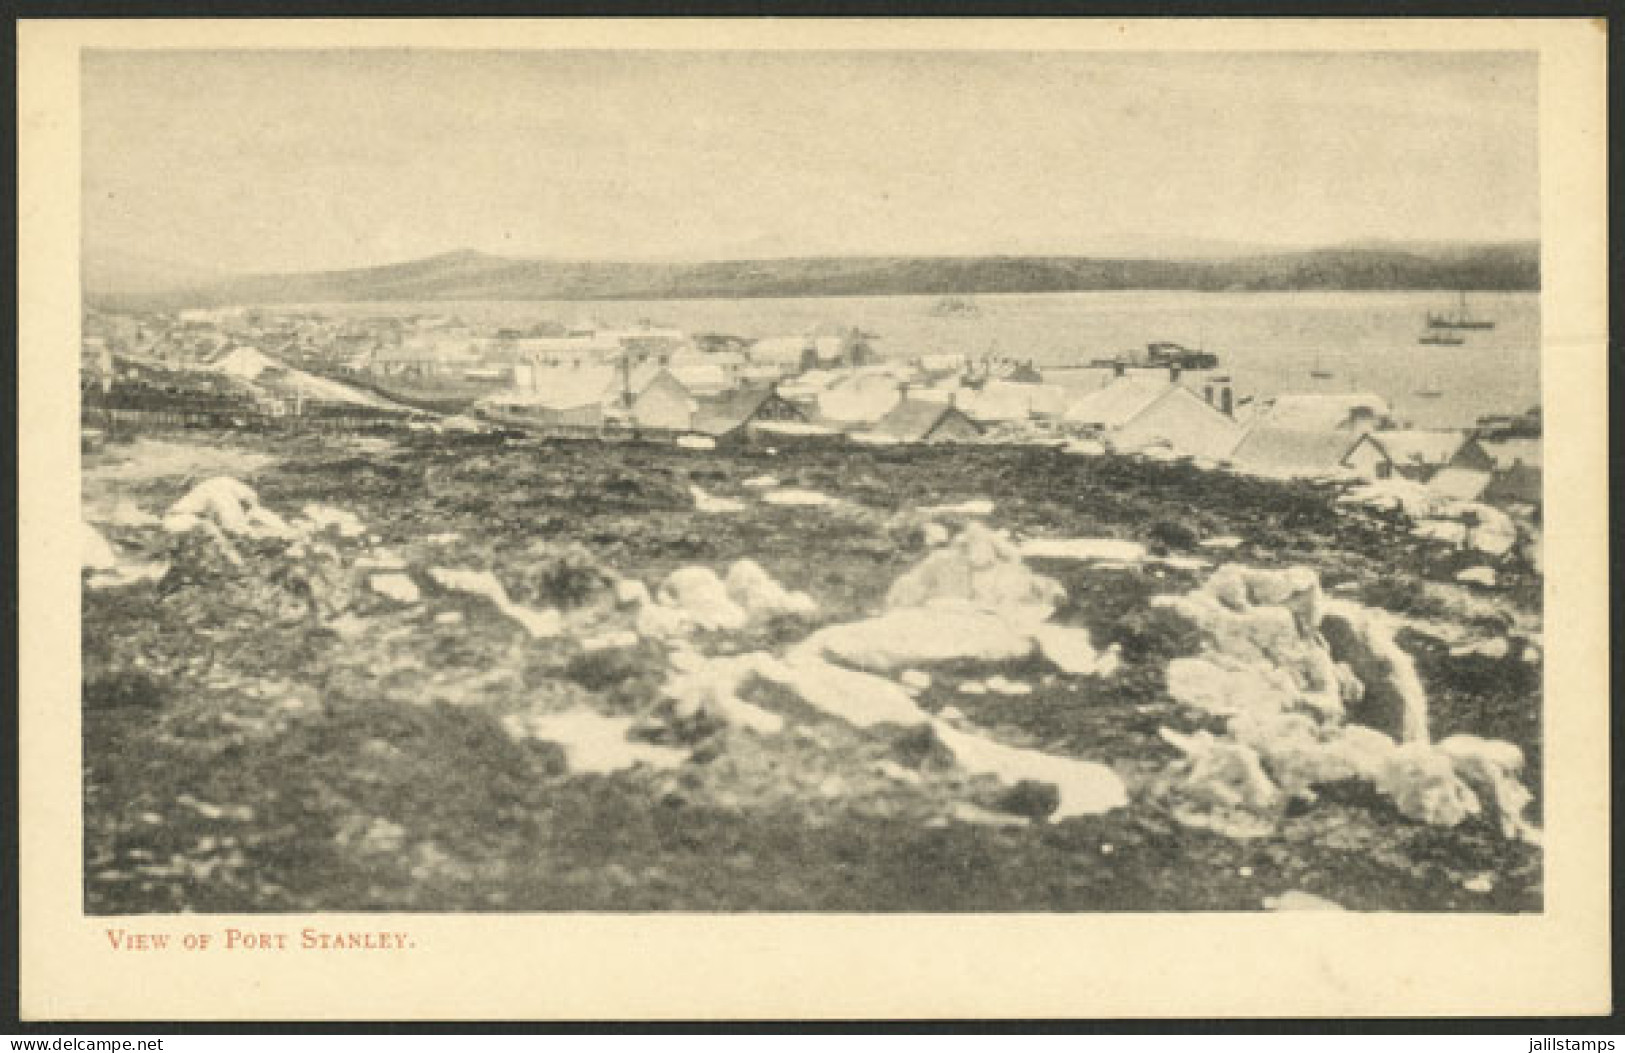 FALKLAND ISLANDS/MALVINAS: PORT STANLEY: General View, Old Unused Postcard, Very Fine Quality! - Falklandeilanden